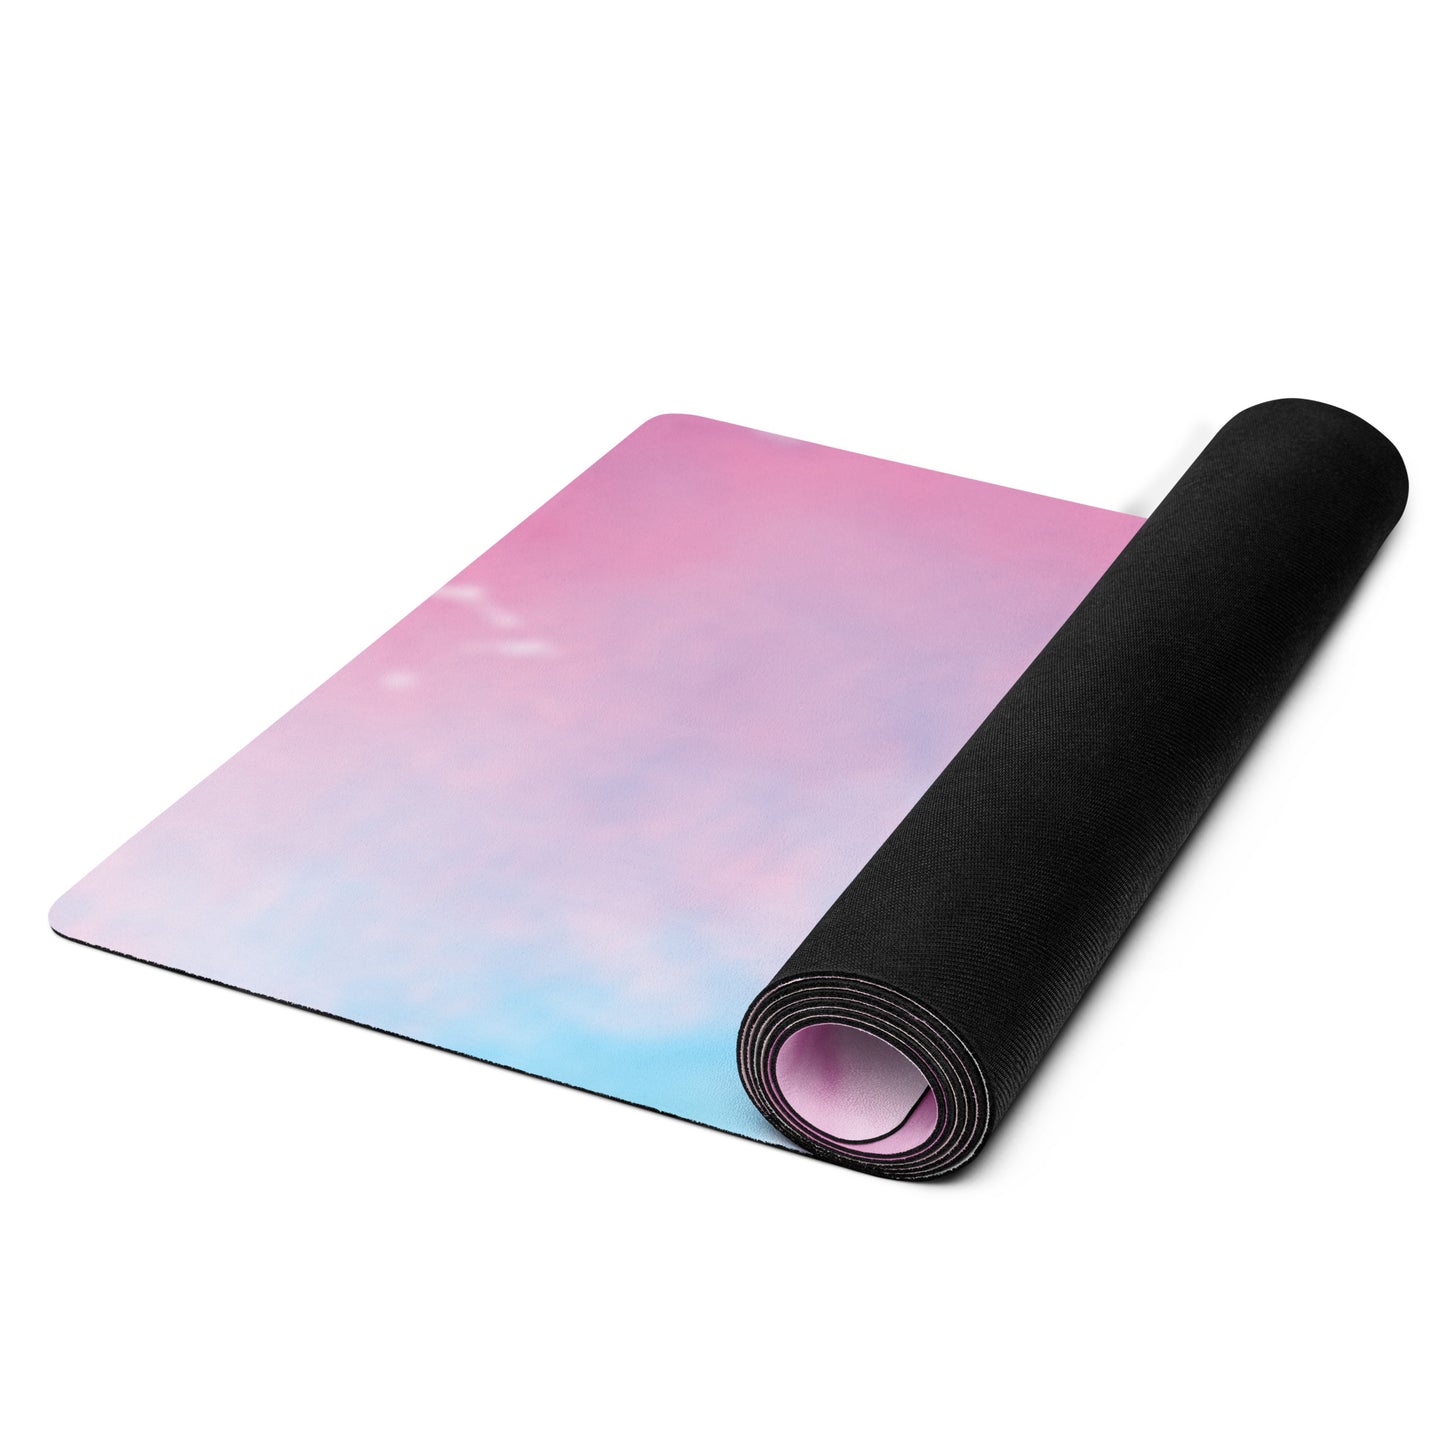 Tie Dye Printed Yoga mat